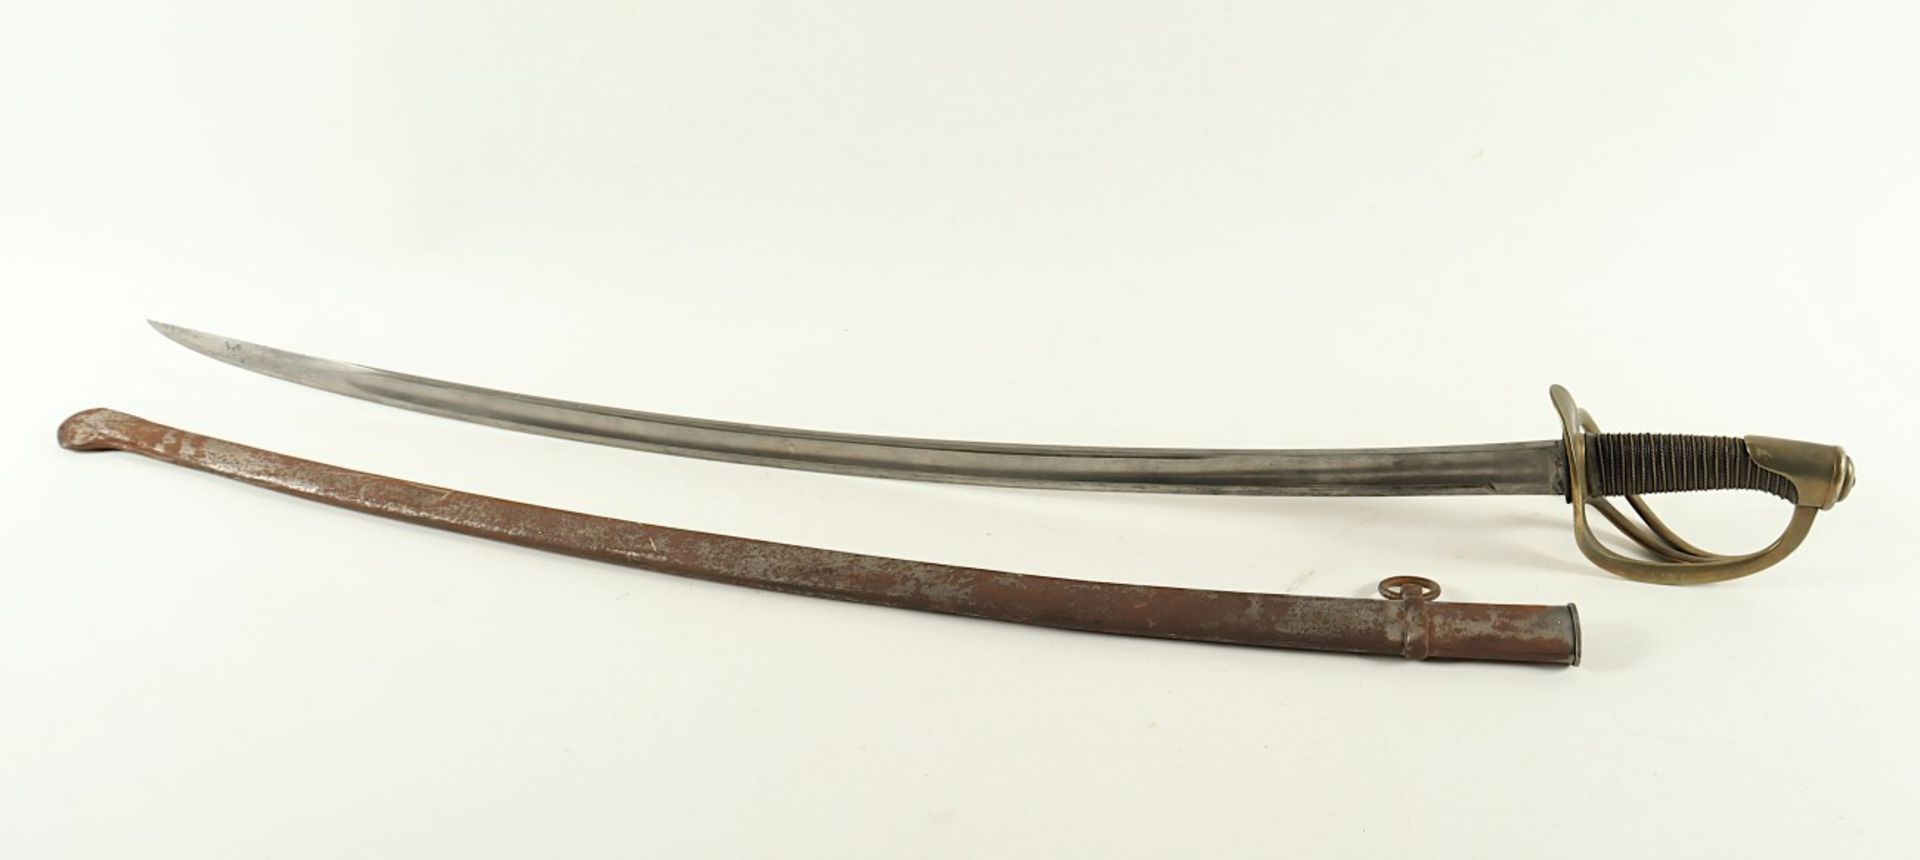 SÄBEL FÜR MANSCHAFTEN M 1822, kräftige, beidseitig gekehlte Rückenklinge (narbig), Messingbügelgefä